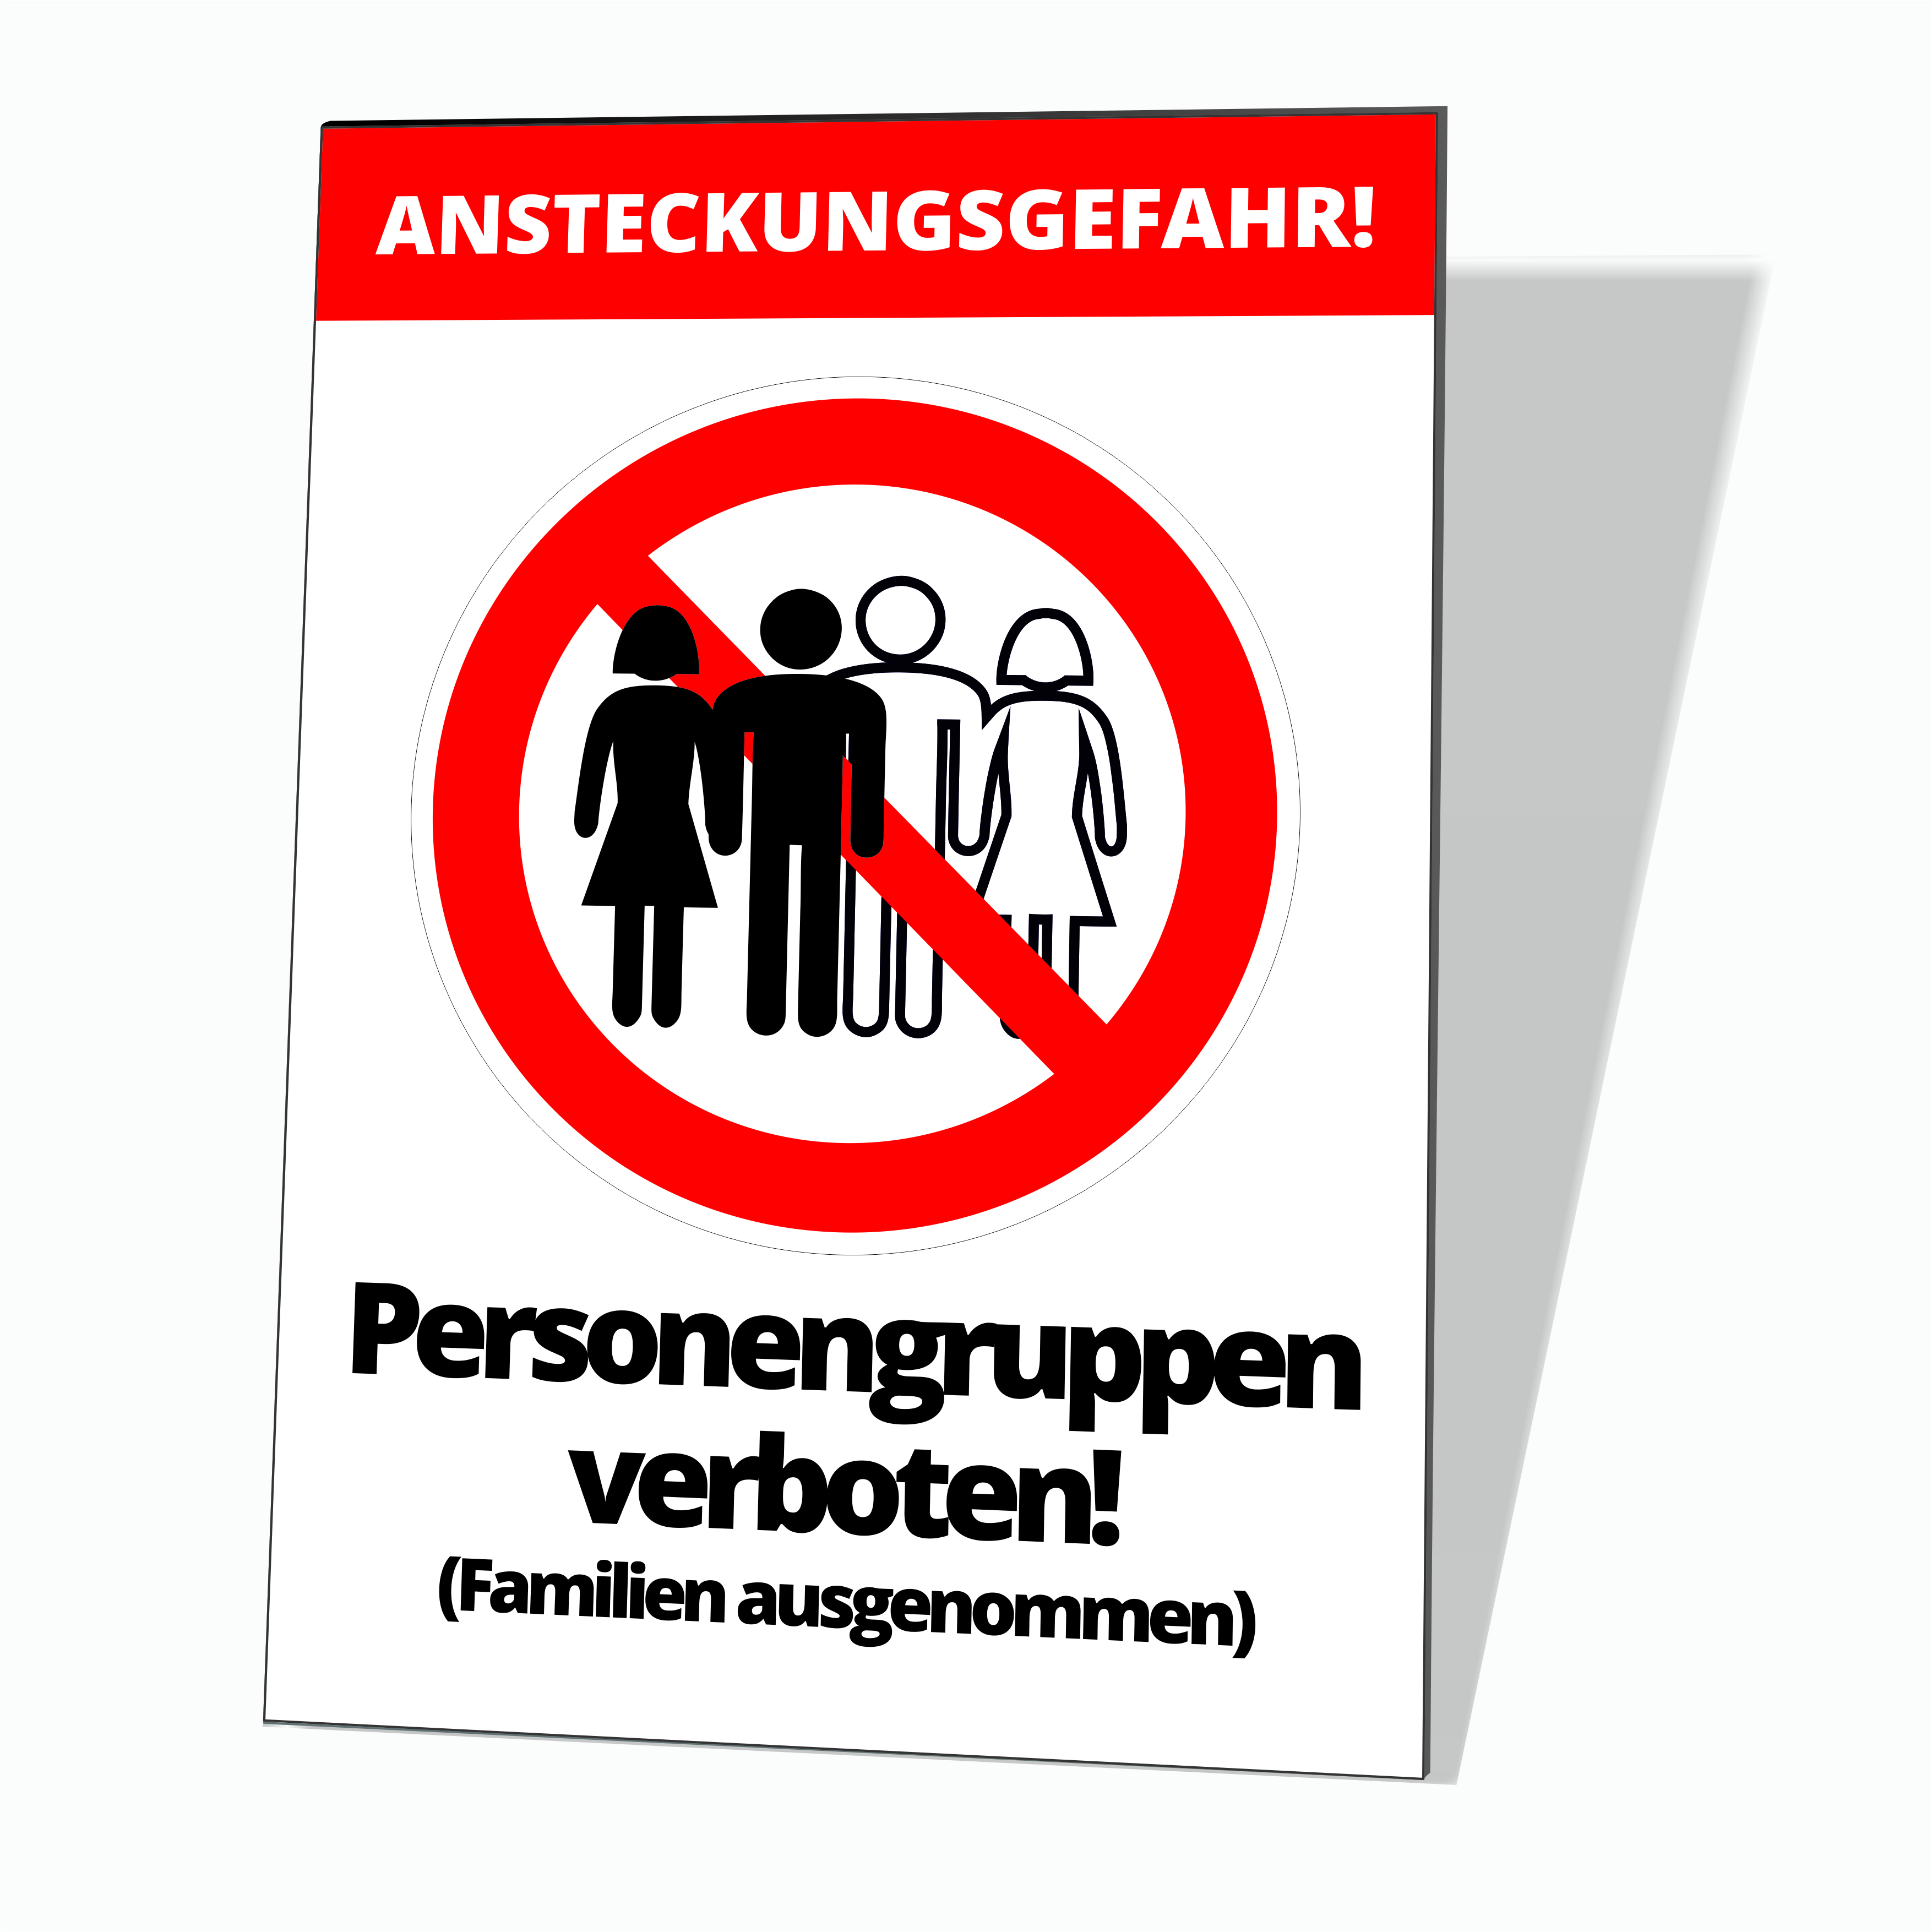  Waarschuwingsbord “Groepen personen verboden” 